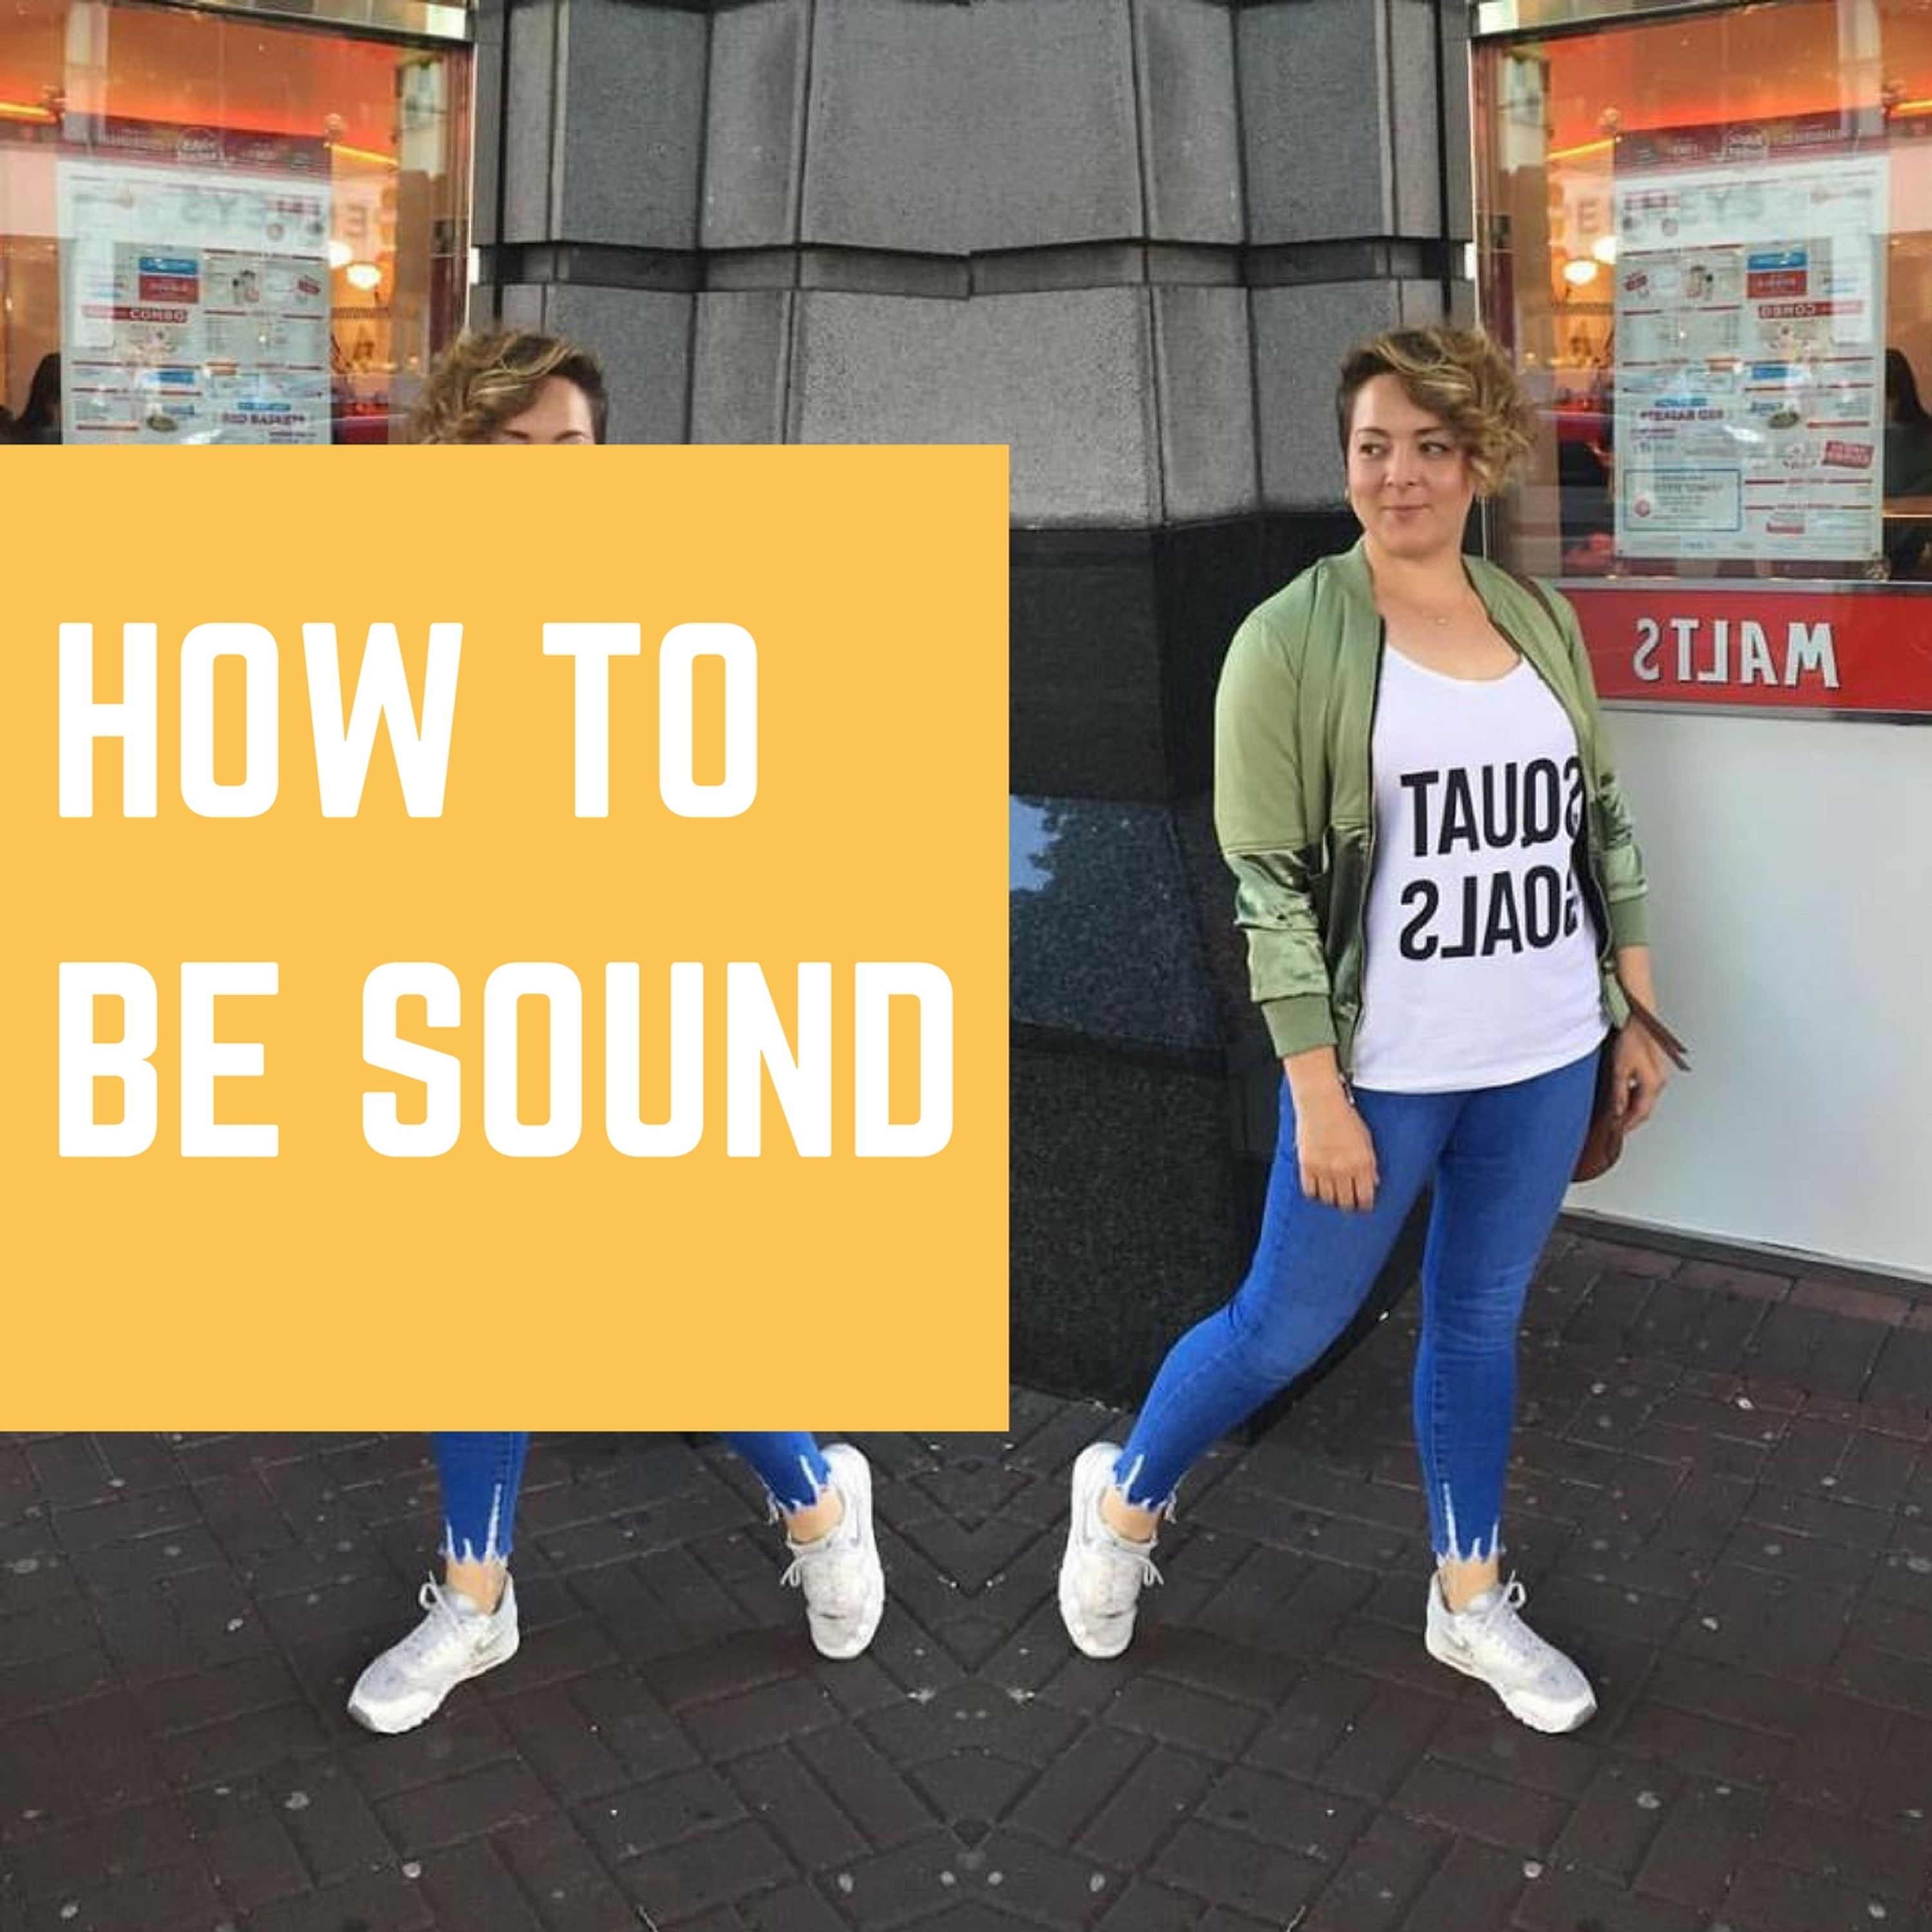 Lindsay Leggett on how to be sound